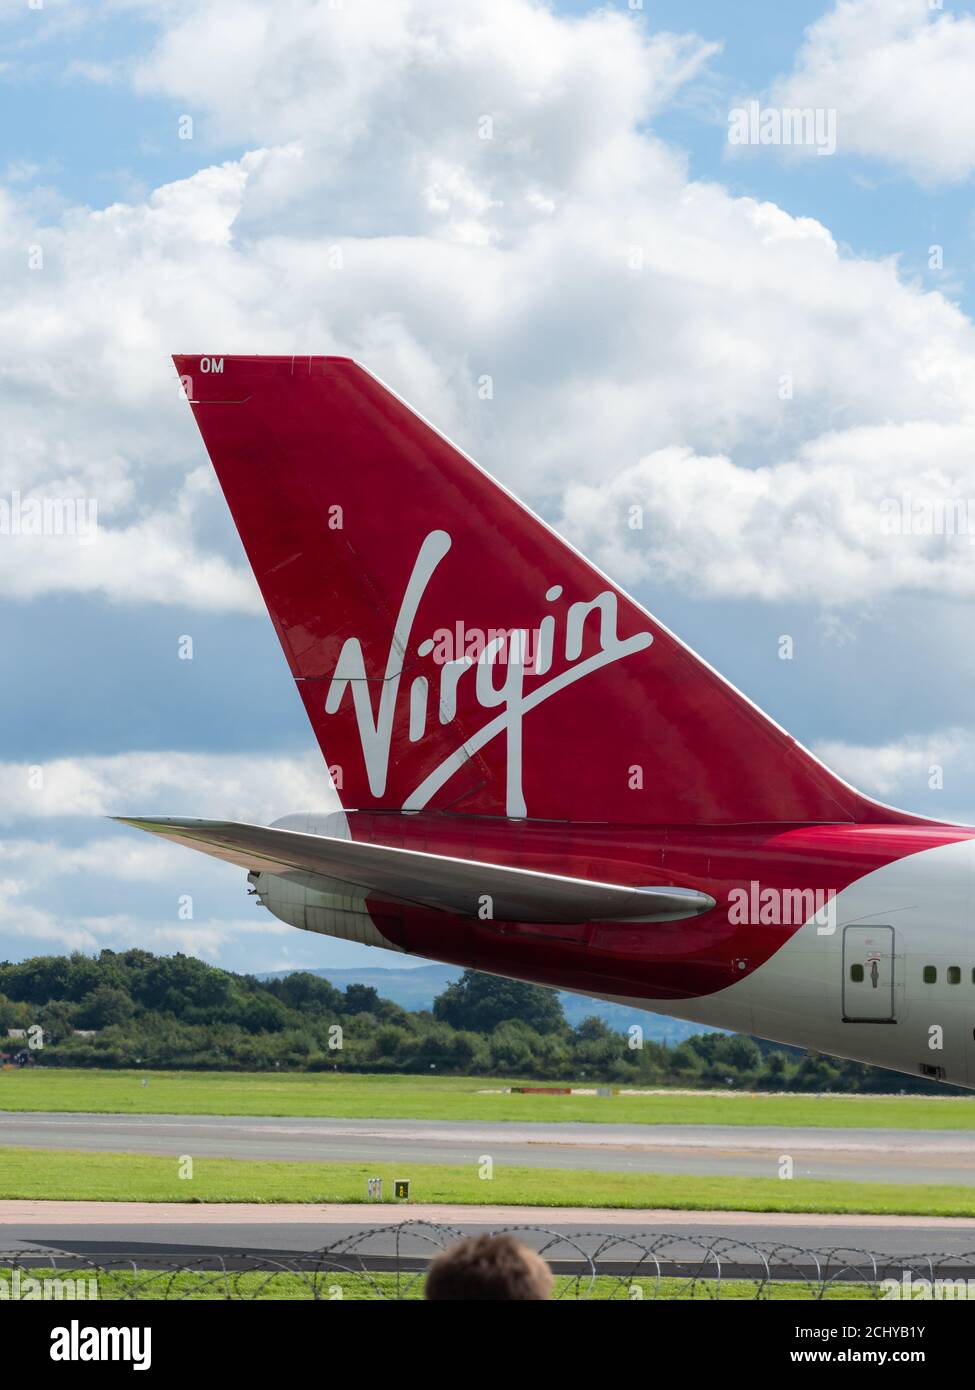 Le vol de départ à la retraite de Virgin Atlantics Boeing 747 - 400 Nommée Barbarella au départ de l'aéroport de Manchester en direction de Heathrow Banque D'Images